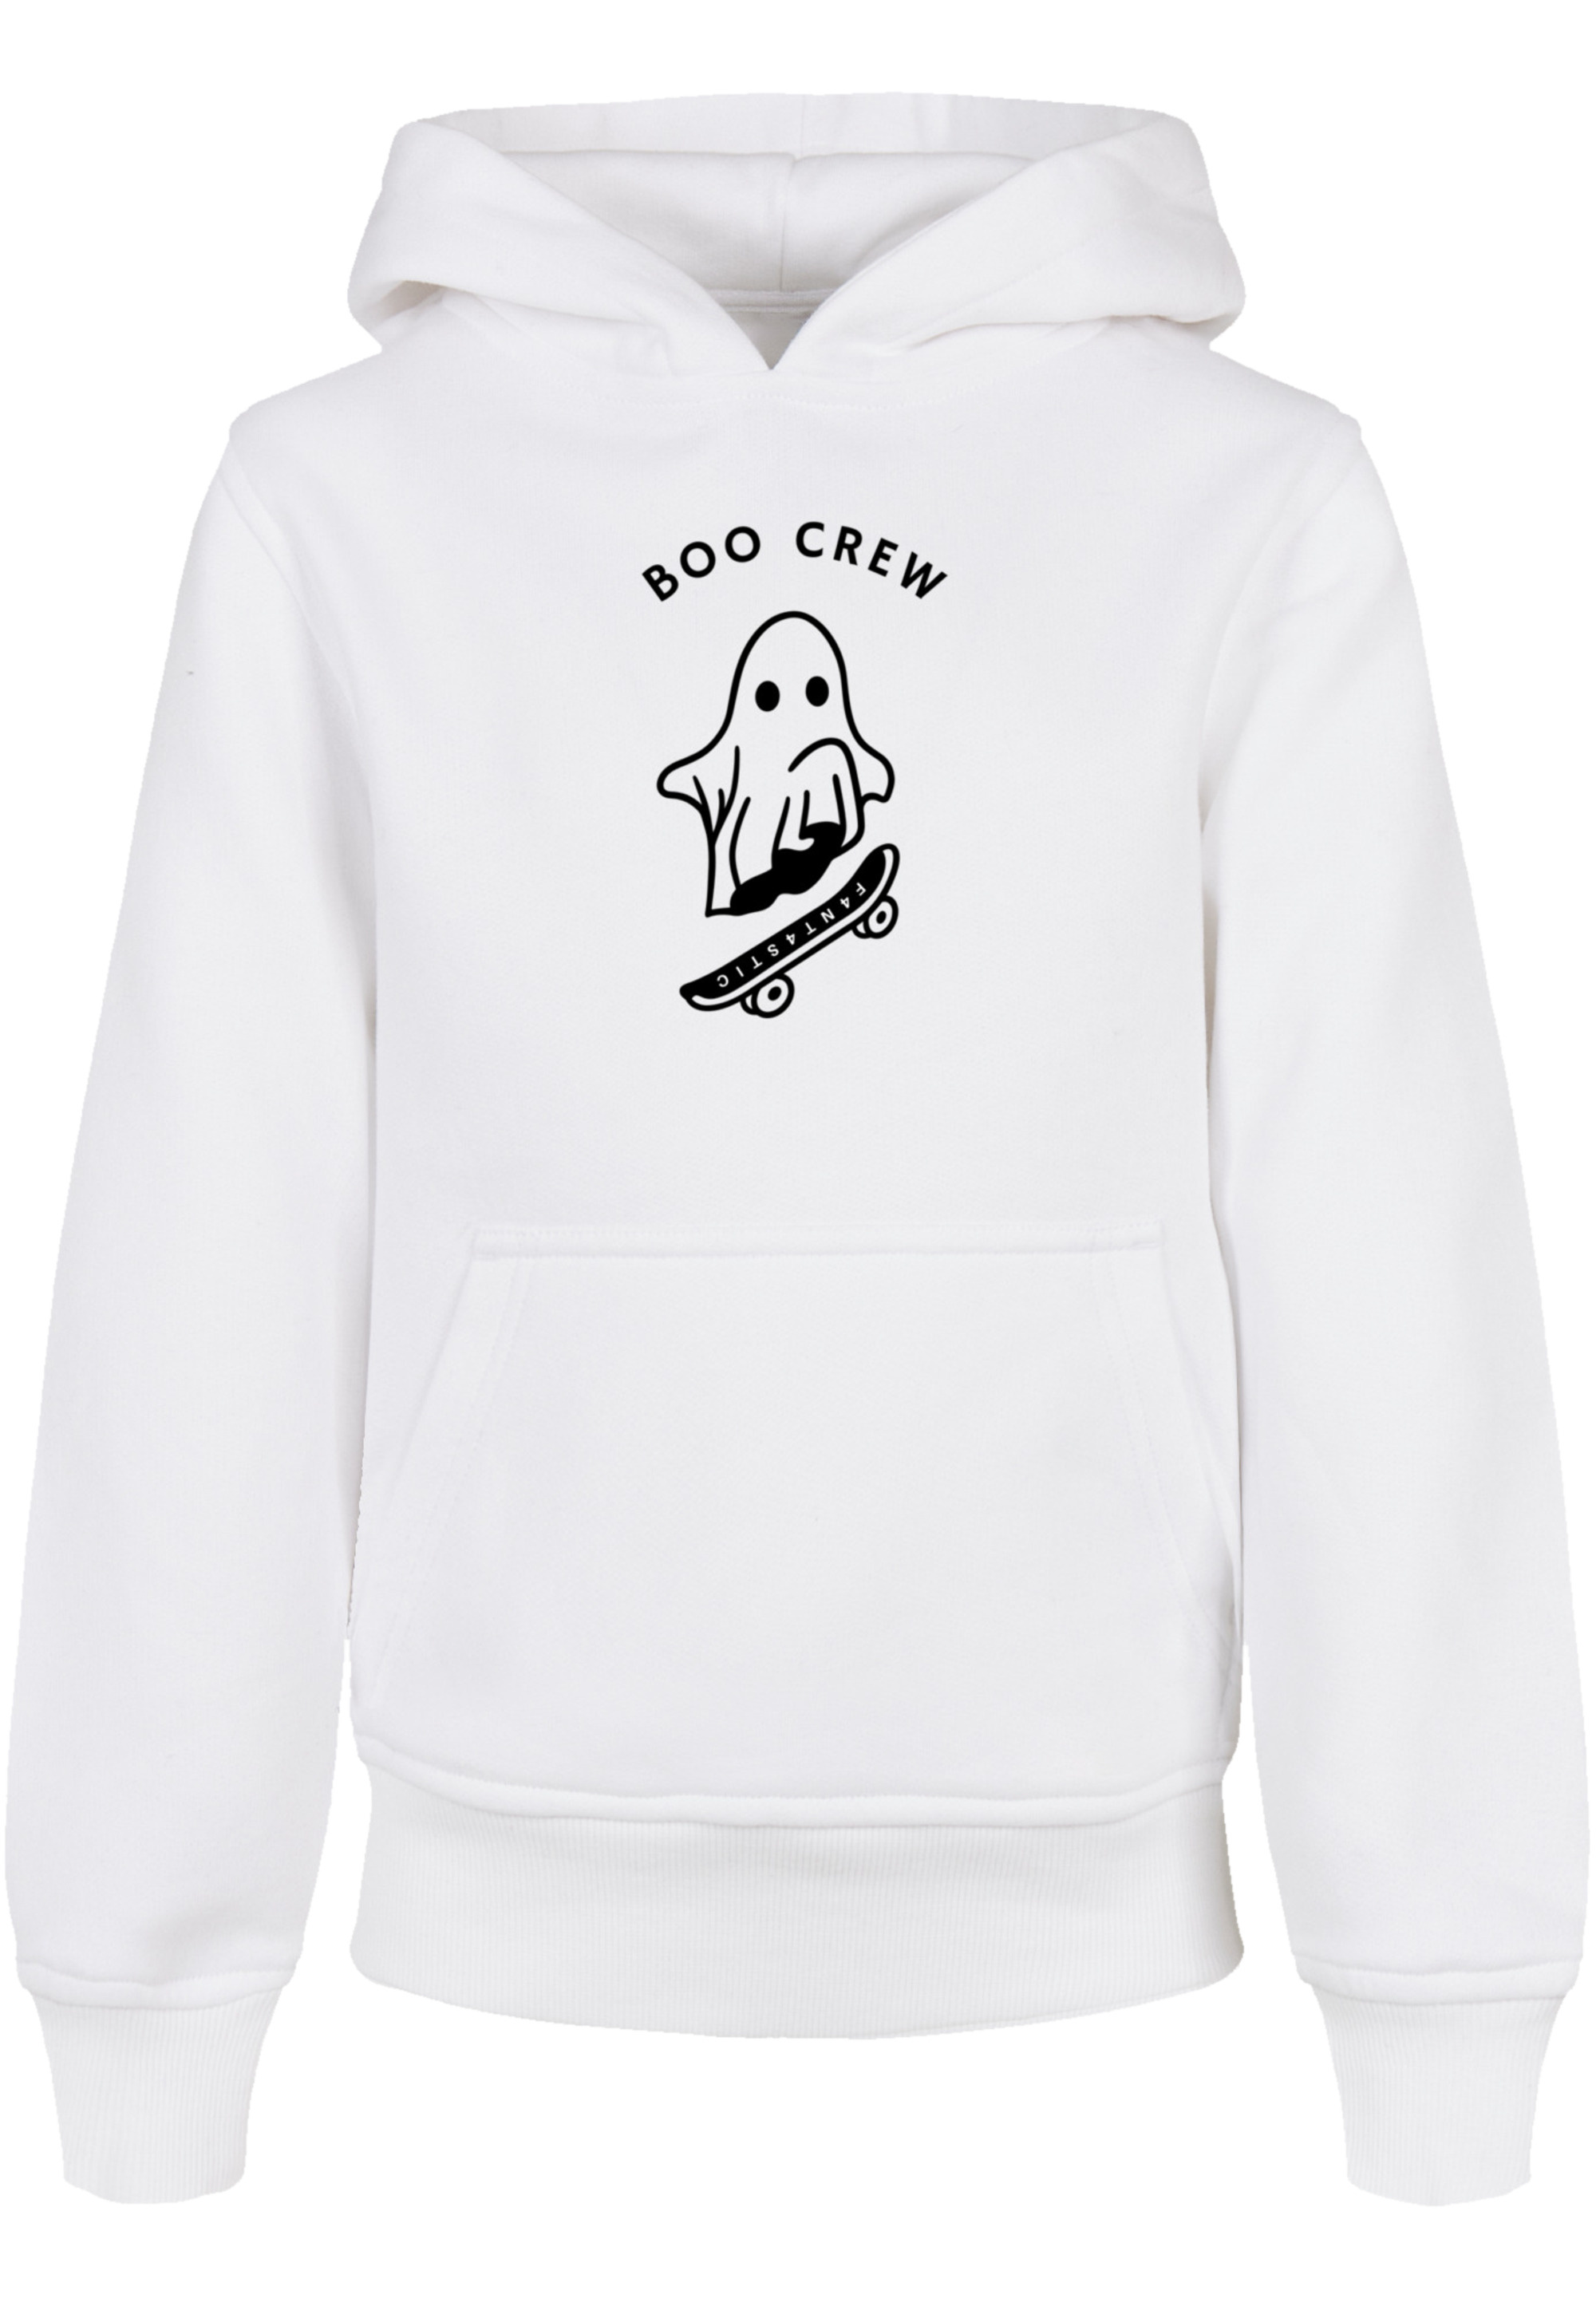 Пуловер F4NT4STIC Basic Kids Hoodie Boo Crew Halloween, белый